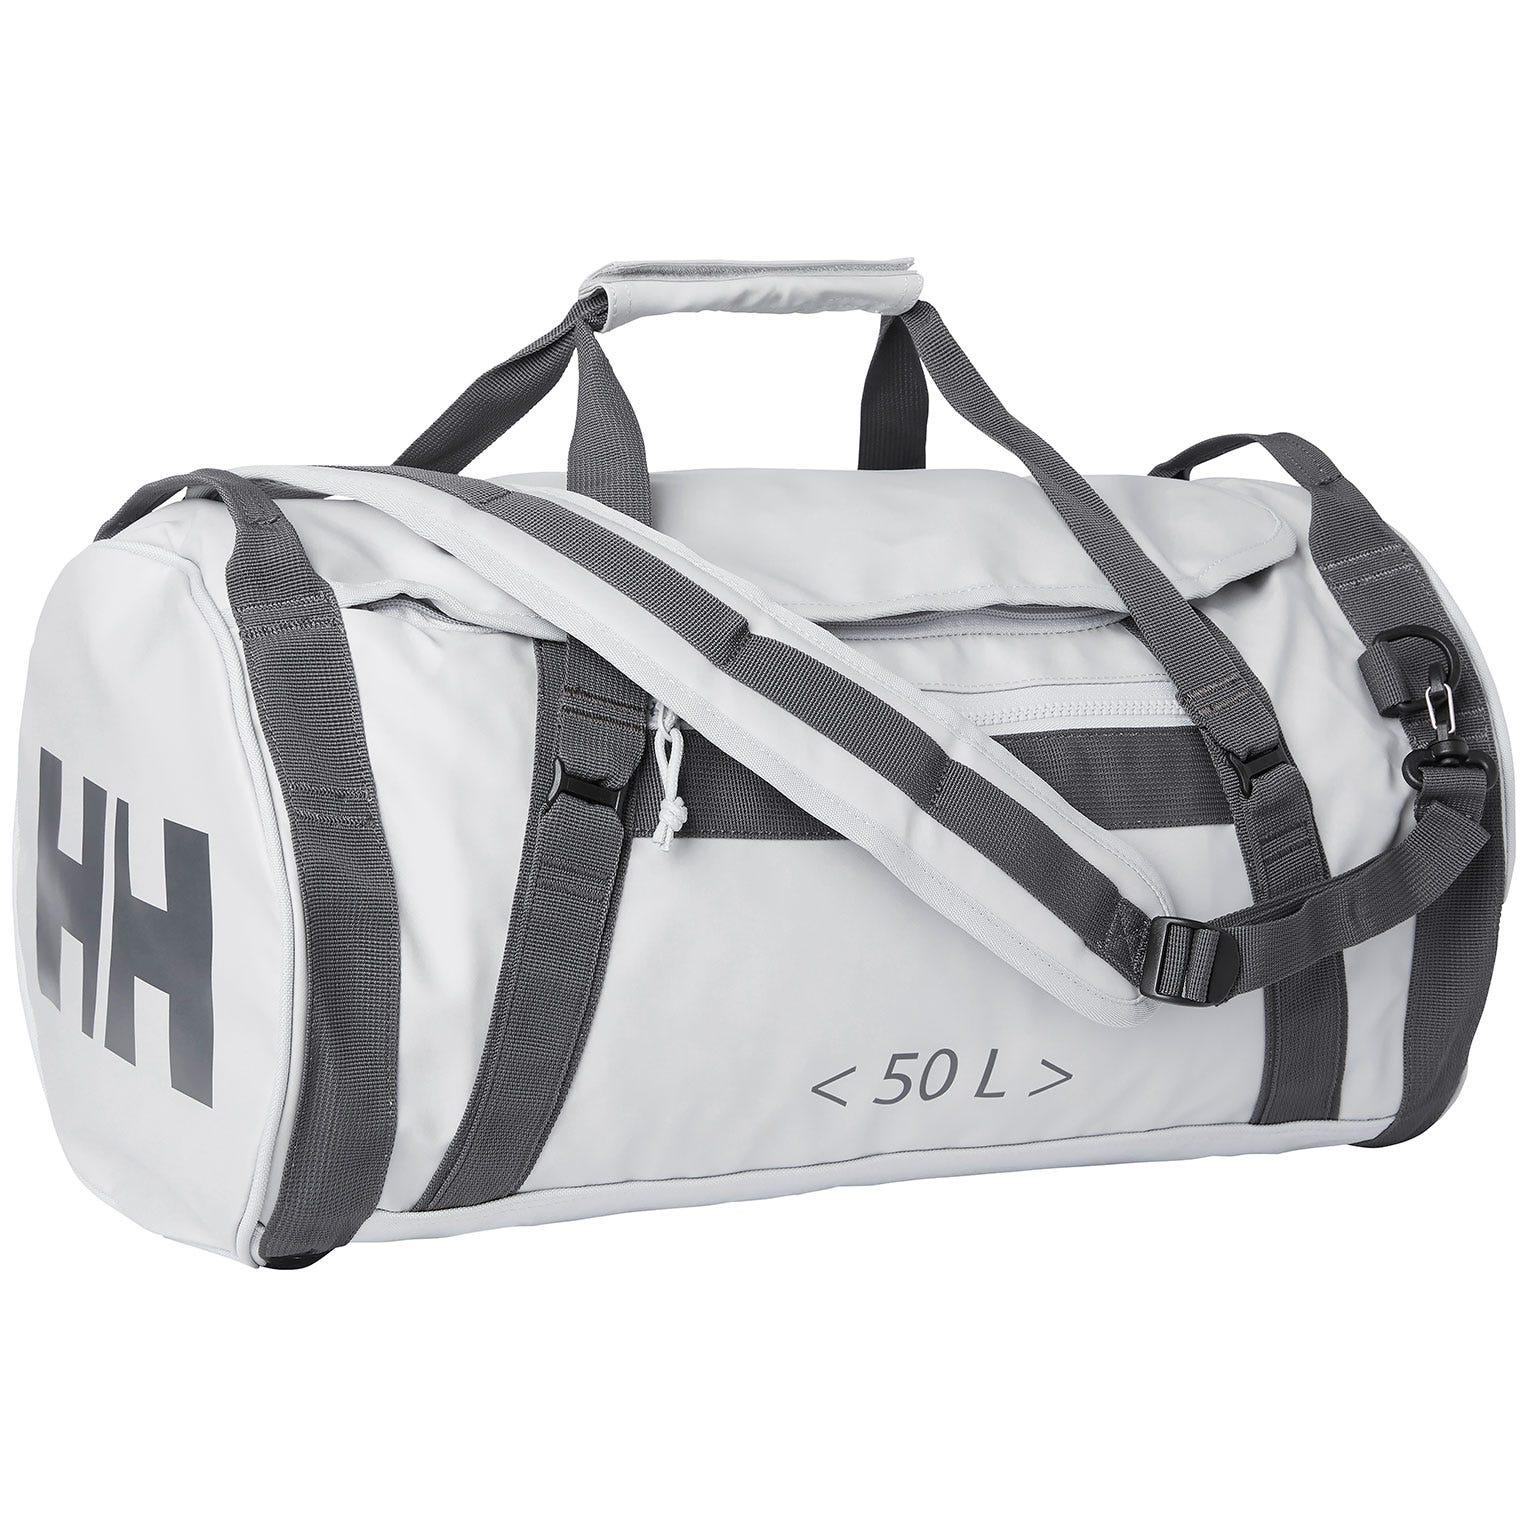 Helly Hansen Hh Sporty Duffel Bag 2 50l Grey Std in Metallic | Lyst